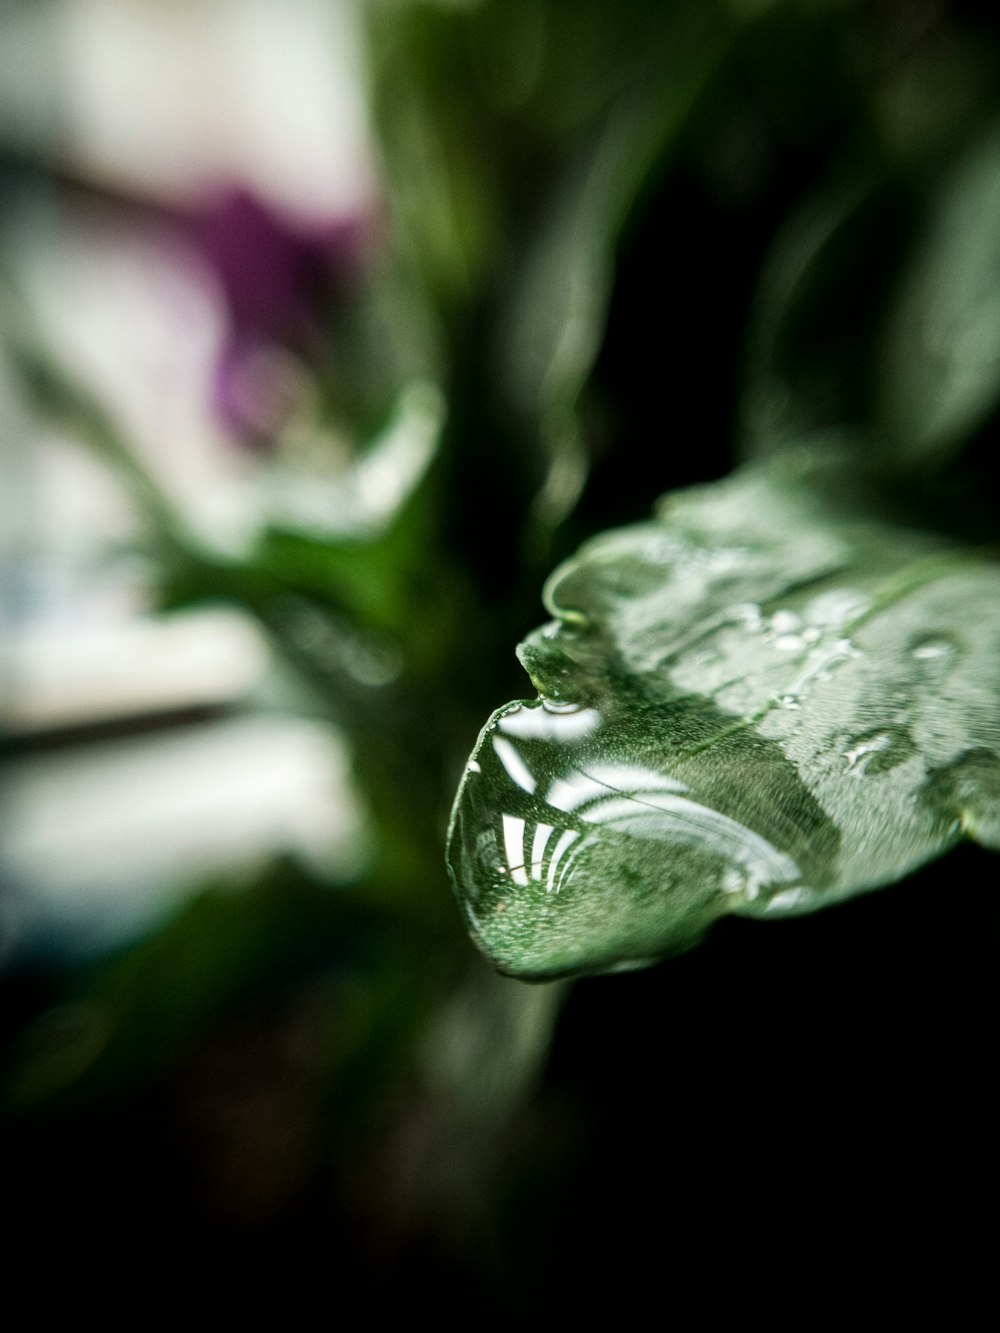 um close up de uma folha com gotículas de água sobre ela